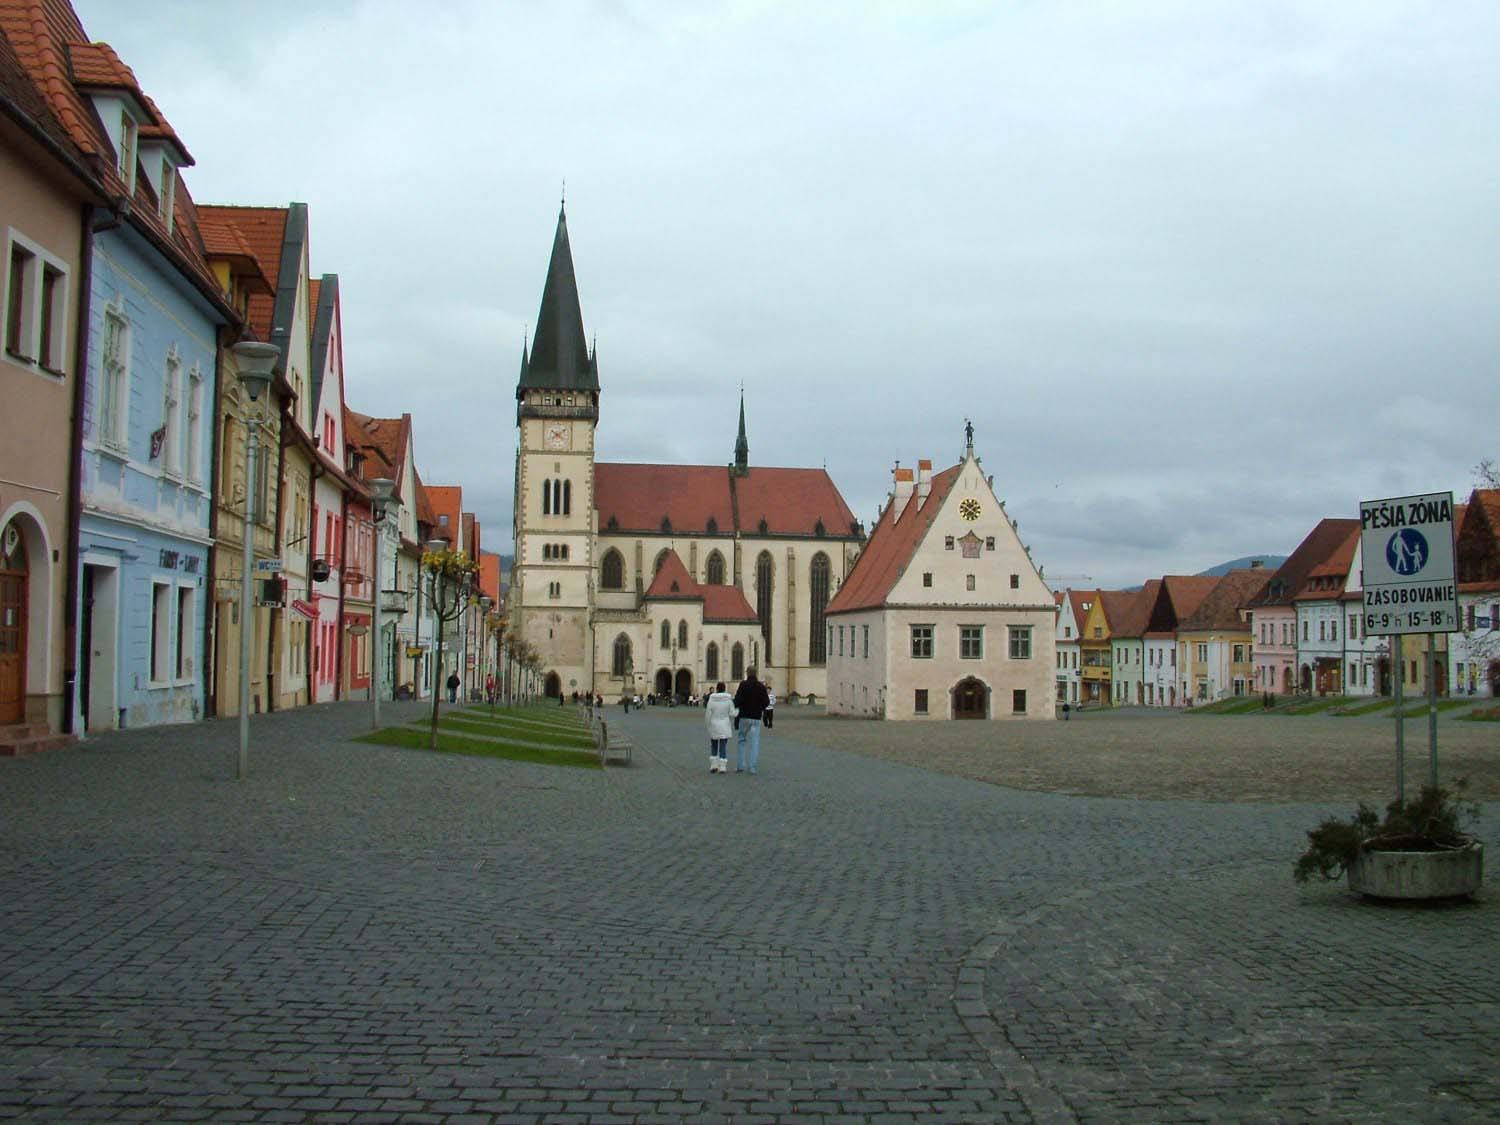 Bardejov's Town Square